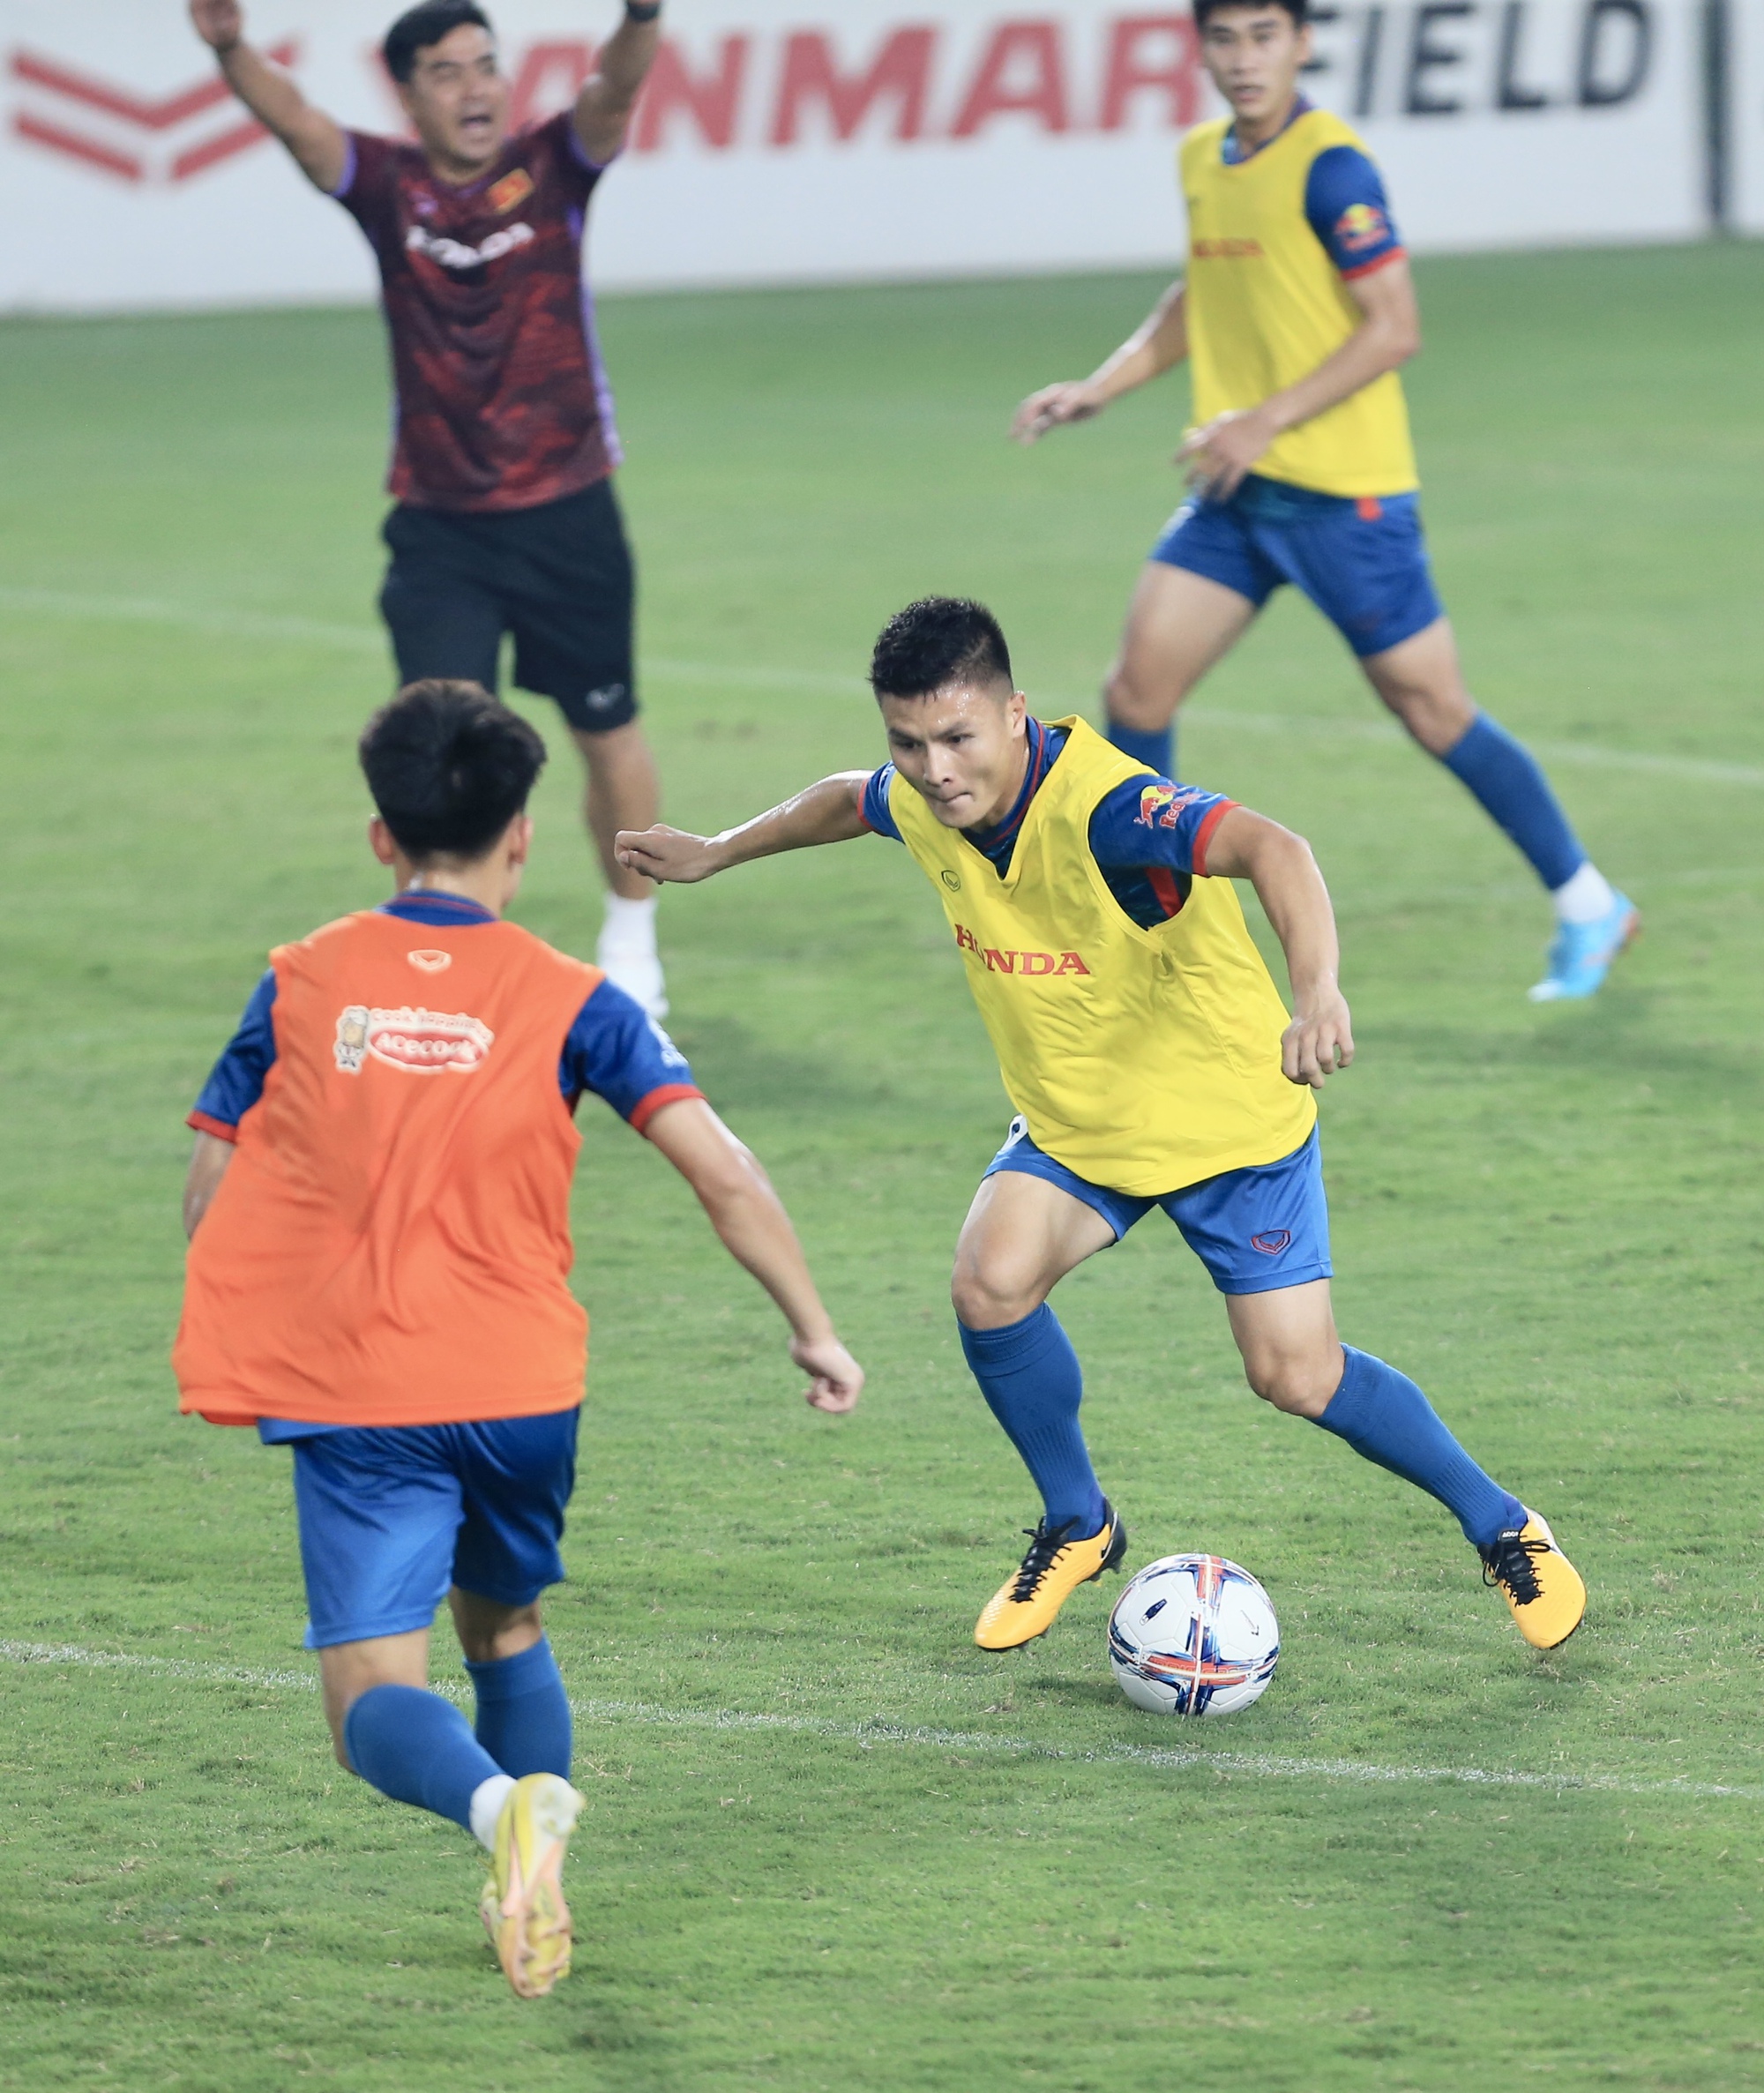 Đội tuyển Việt Nam đá đối kháng với U.23, Quang Hải đọ sức cùng đàn em - Ảnh 12.